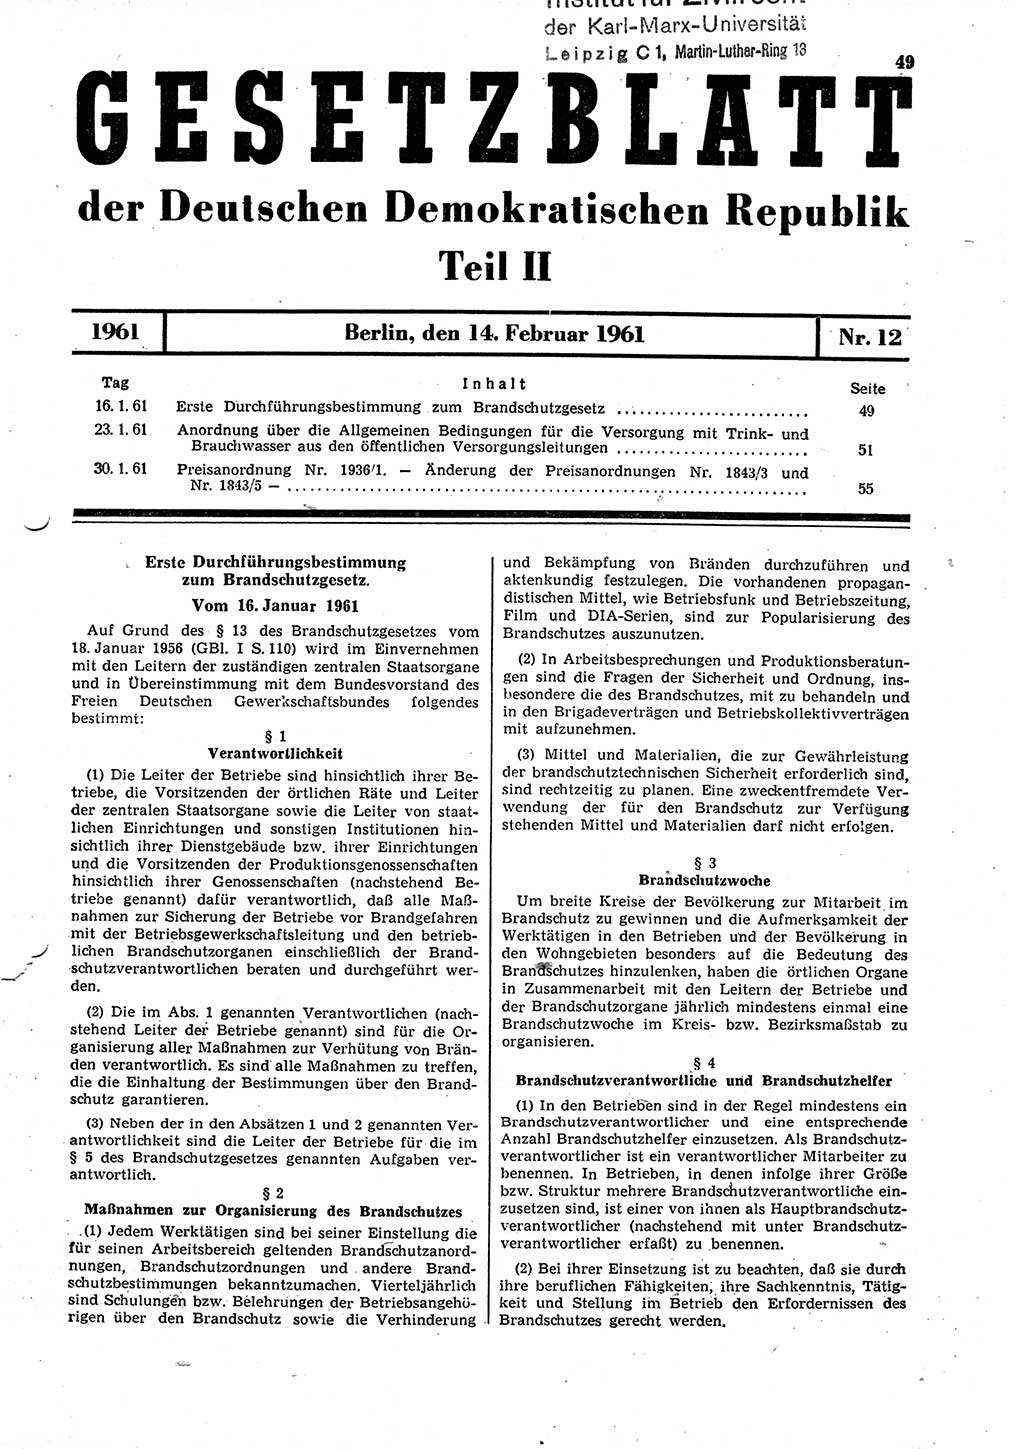 Gesetzblatt (GBl.) der Deutschen Demokratischen Republik (DDR) Teil ⅠⅠ 1961, Seite 49 (GBl. DDR ⅠⅠ 1961, S. 49)